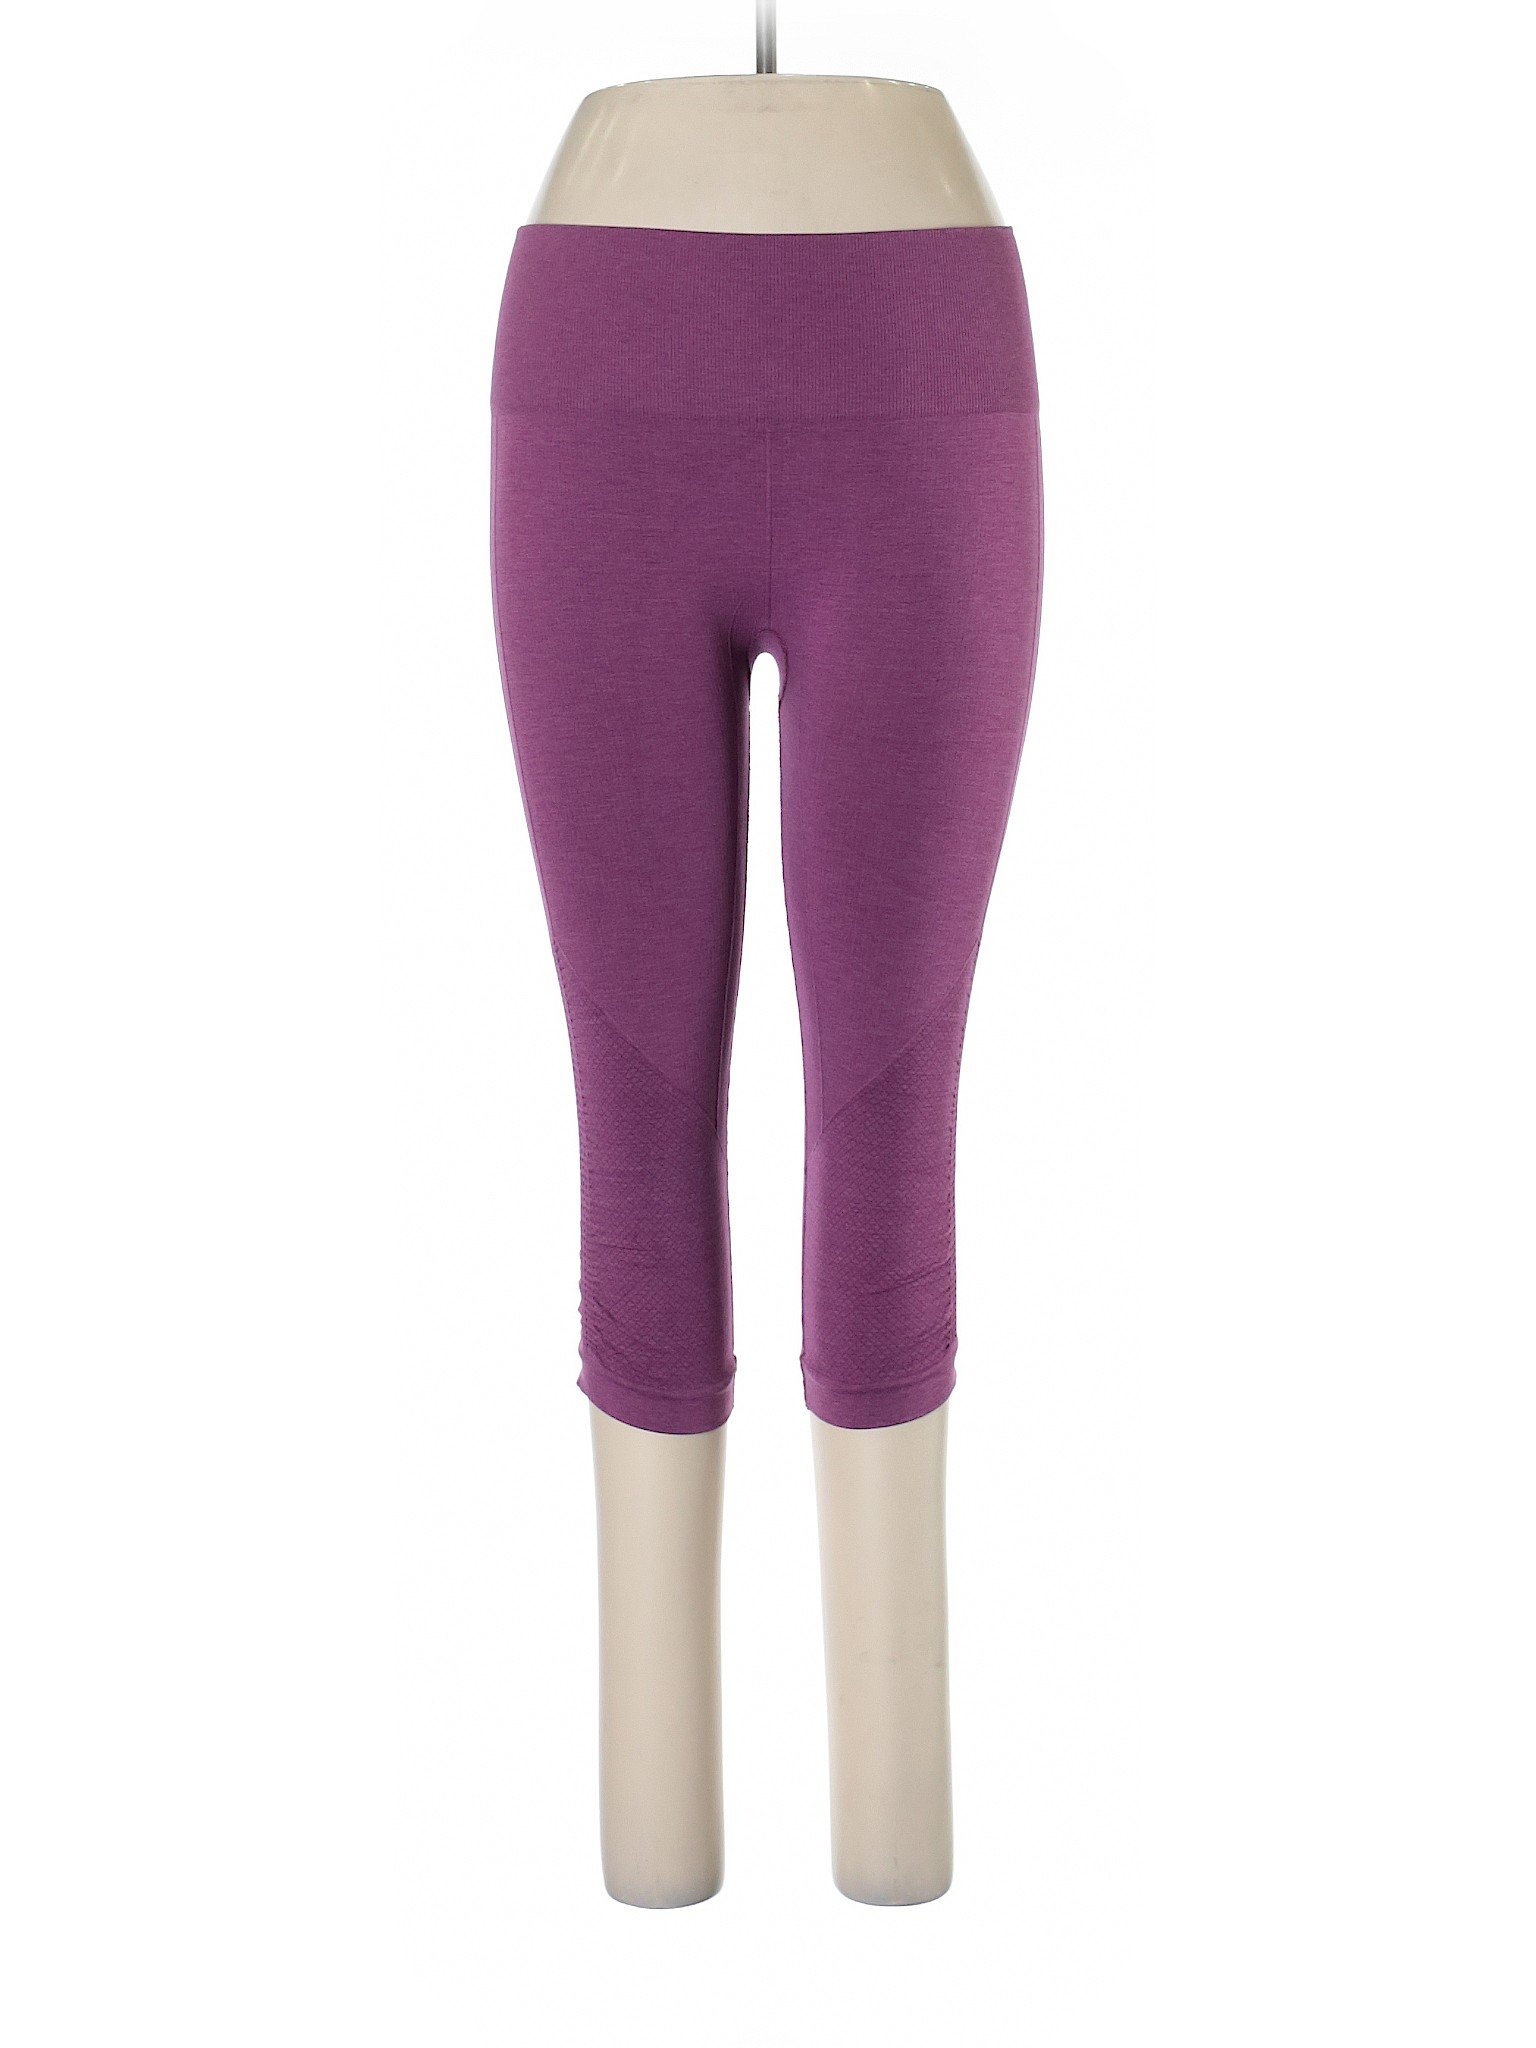 Lululemon Athletica Purple Active Pants Size 6 - 52% off